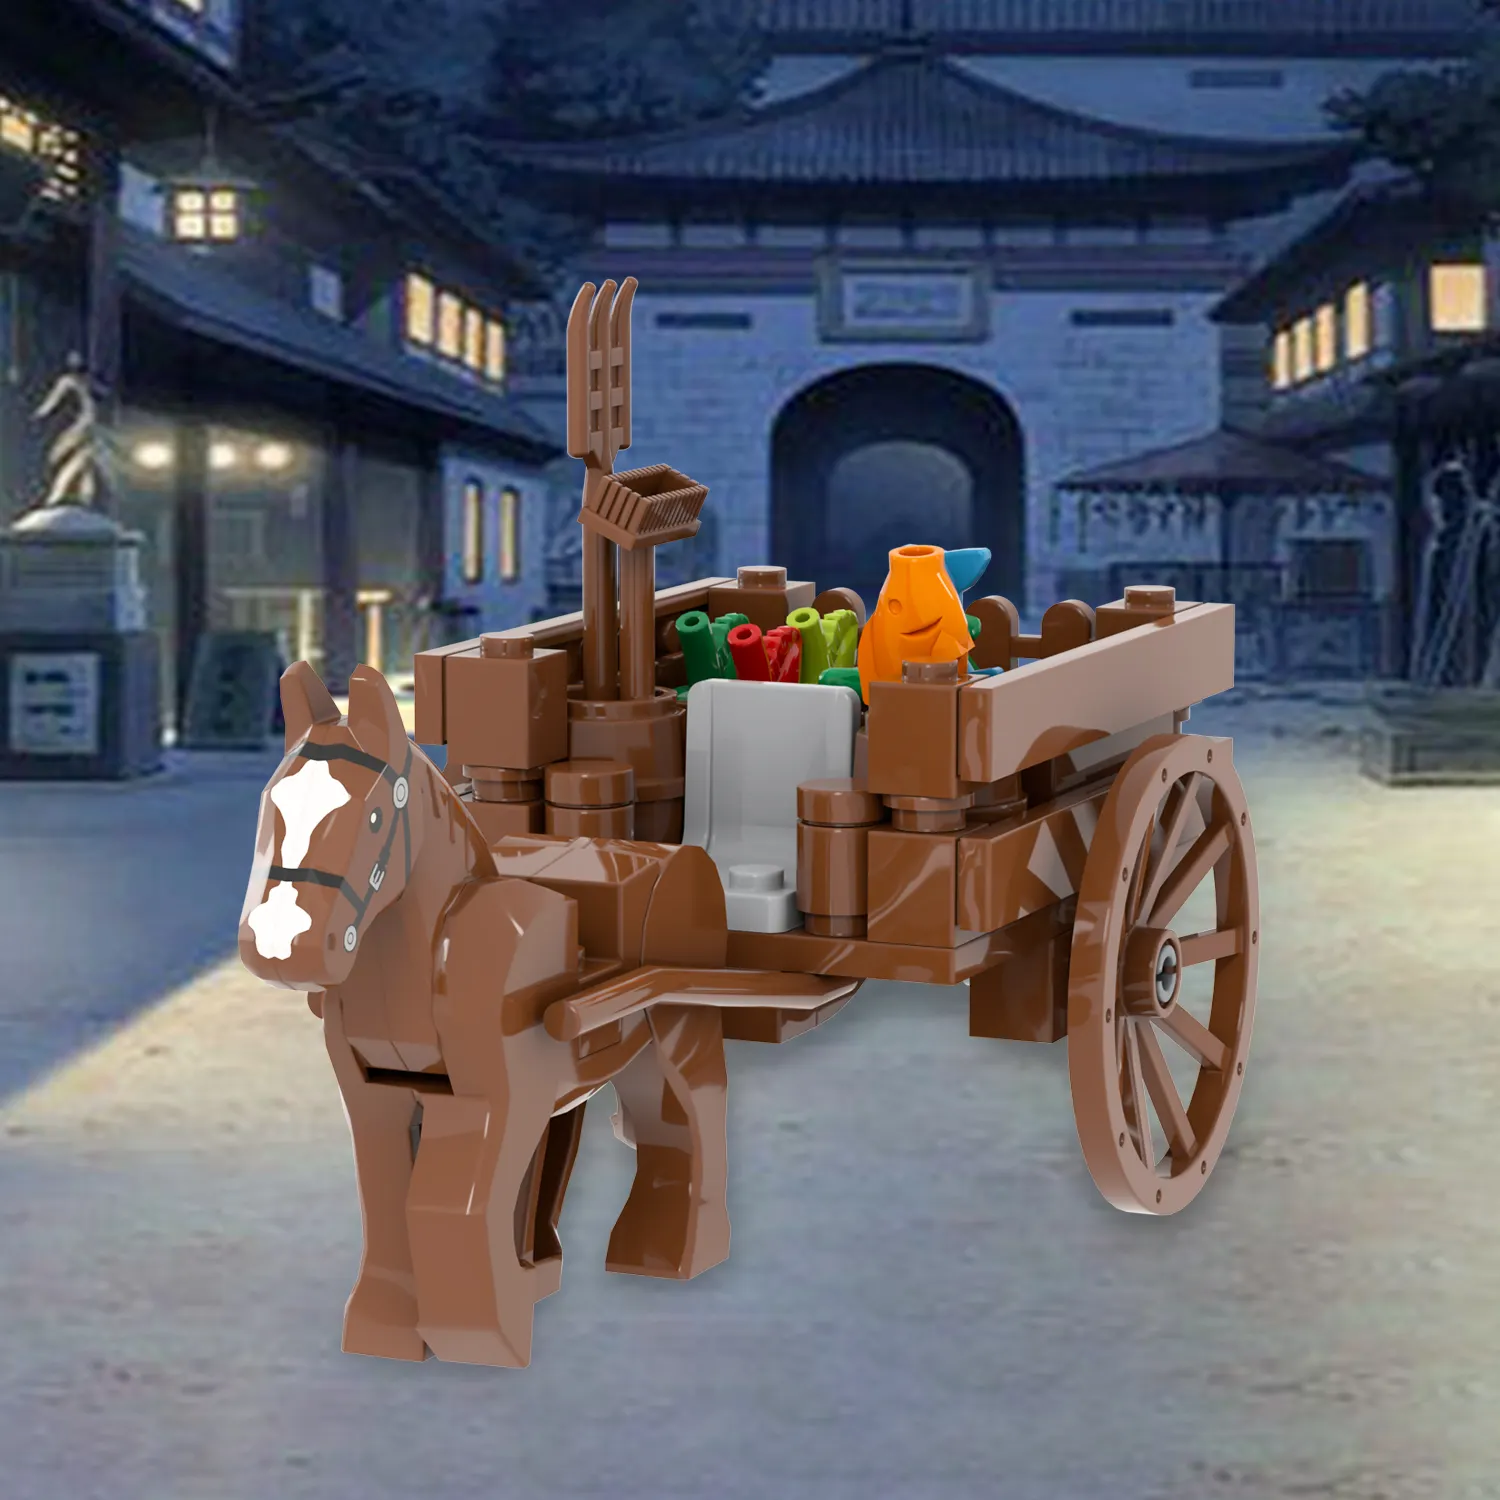 MOC3028 fattoria mela pesce carota carrozza medievale 55 pezzi Street View Building Blocks fai da te veicolo mattoni giocattoli per bambini regalo